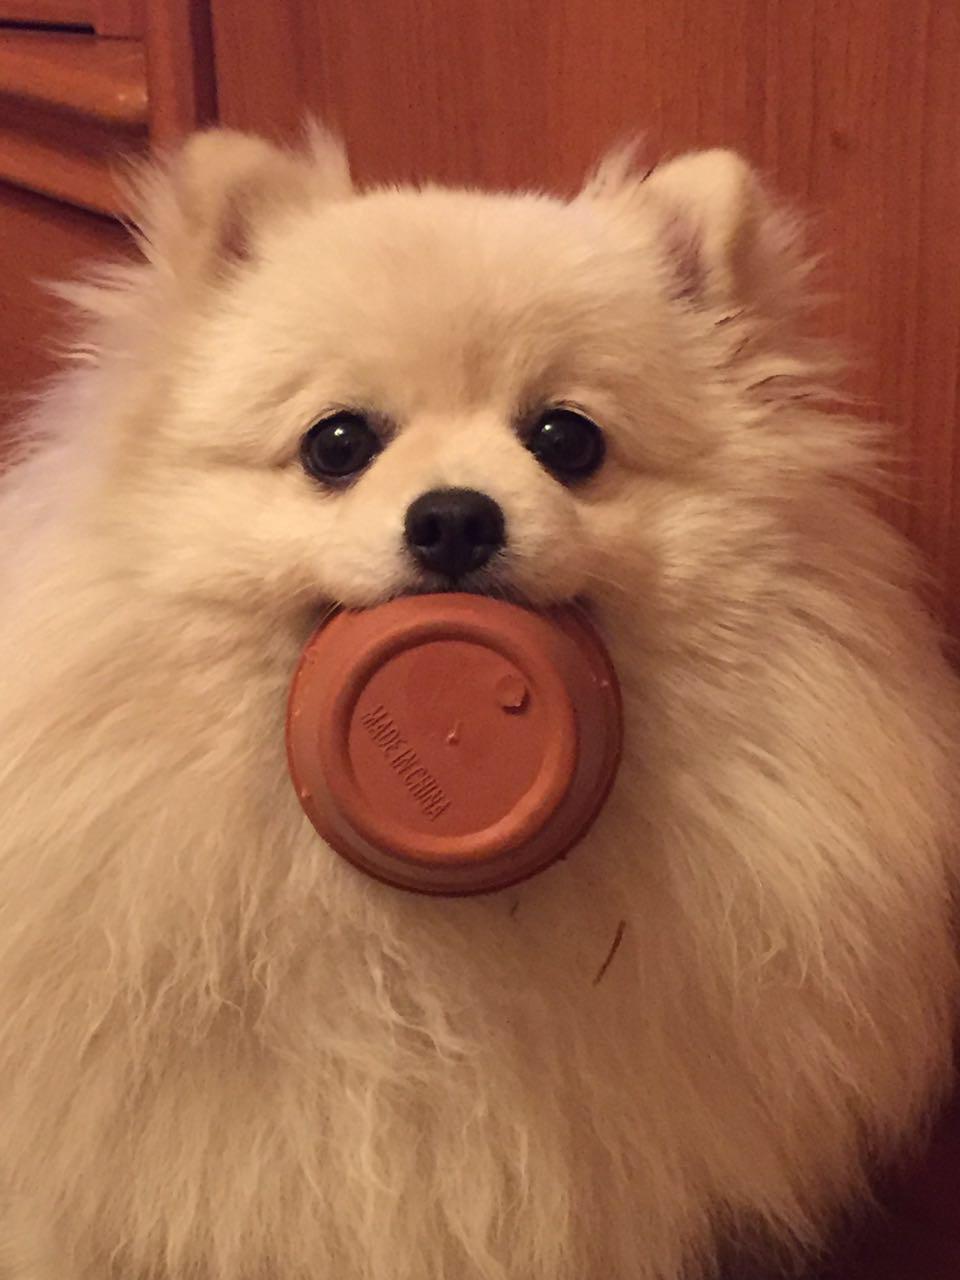 The Pomeranian stole my pot. 